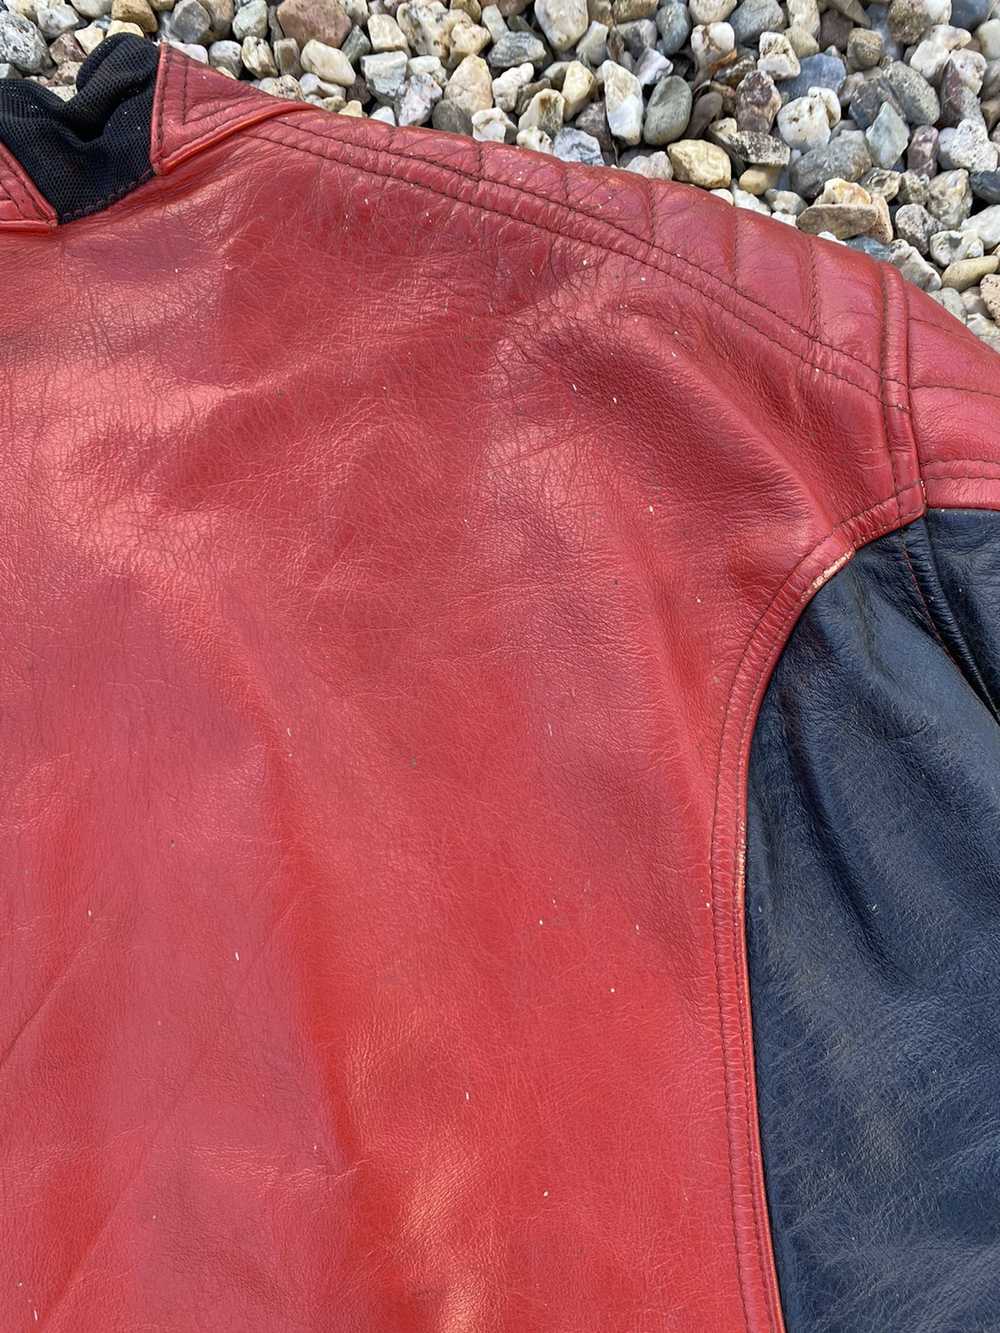 Dainese × Leather Jacket Dainese Vintage leather … - image 5